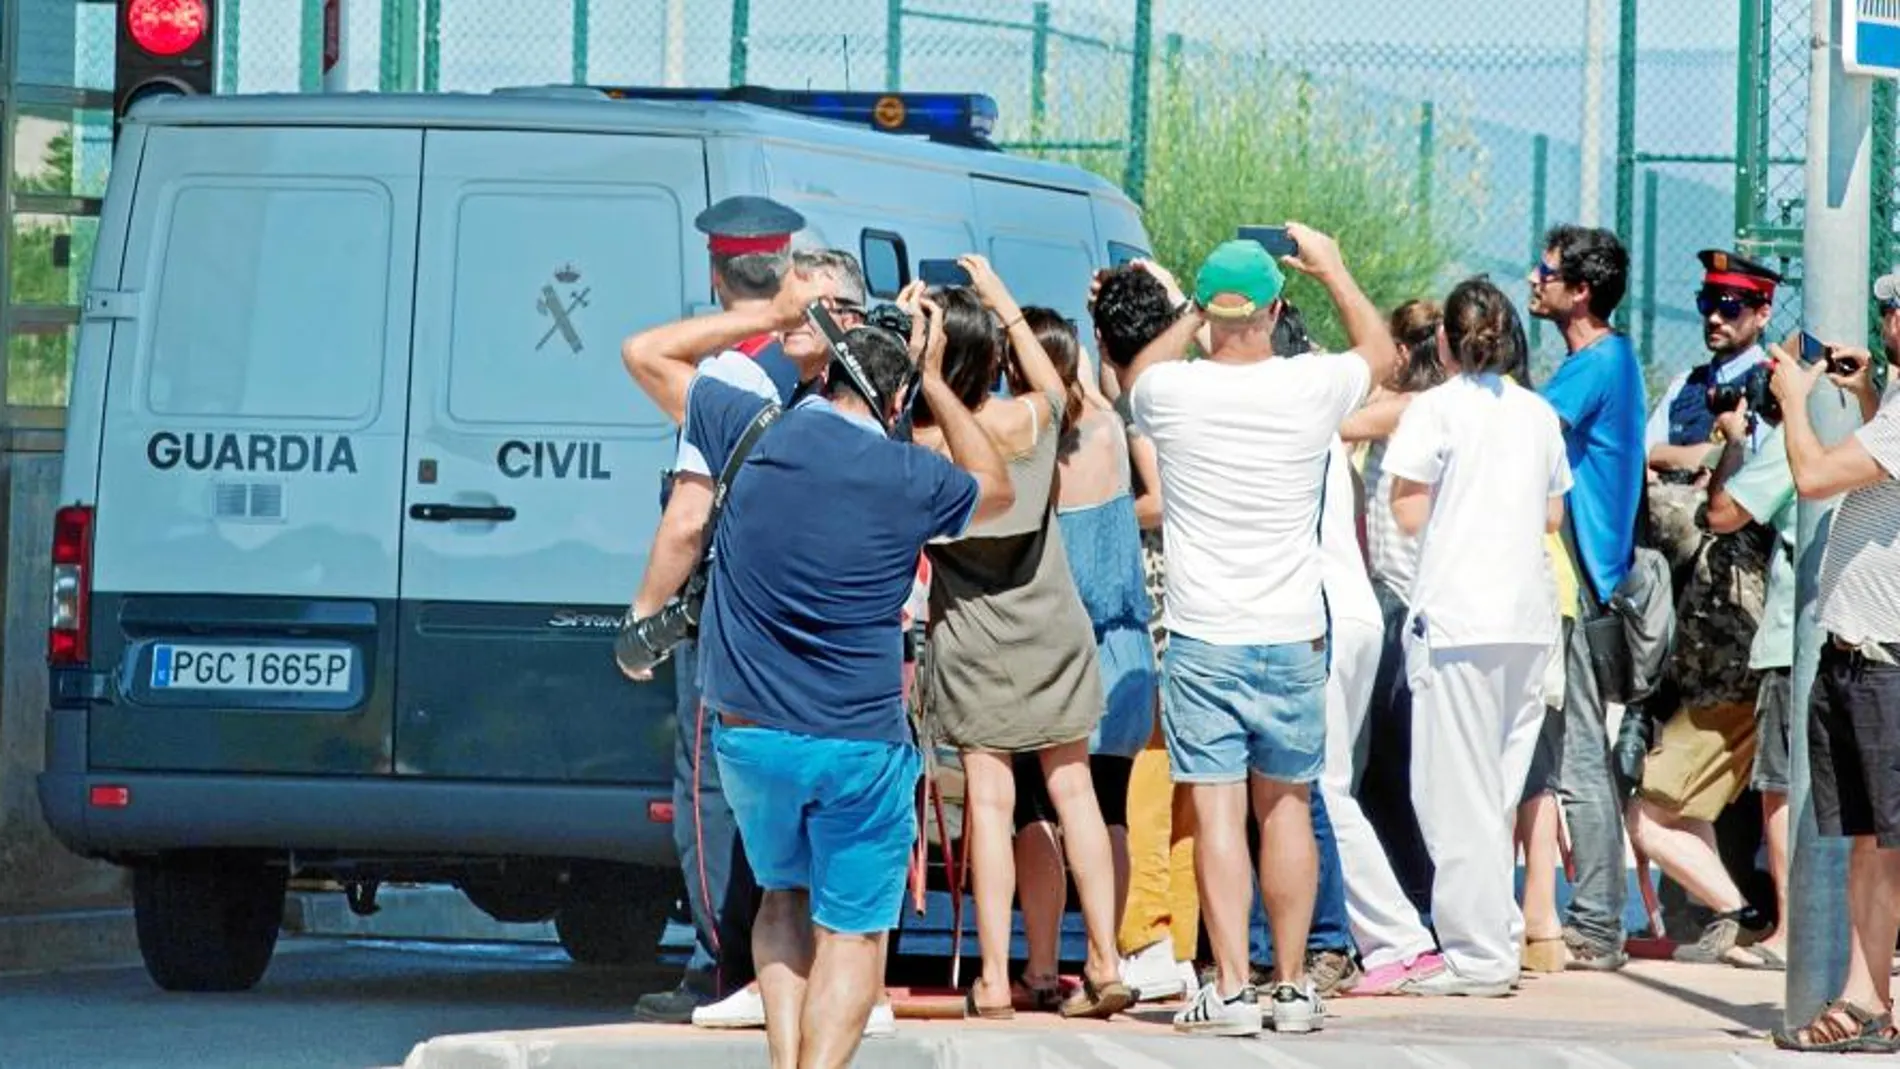 Periodistas, curiosos y simpatizantes de la causa independentista con lazos amarillos recibieron el furgón de la Guardia Civil cuando trasladaron a los dirigentes catalanes a las prisiones de Cataluña